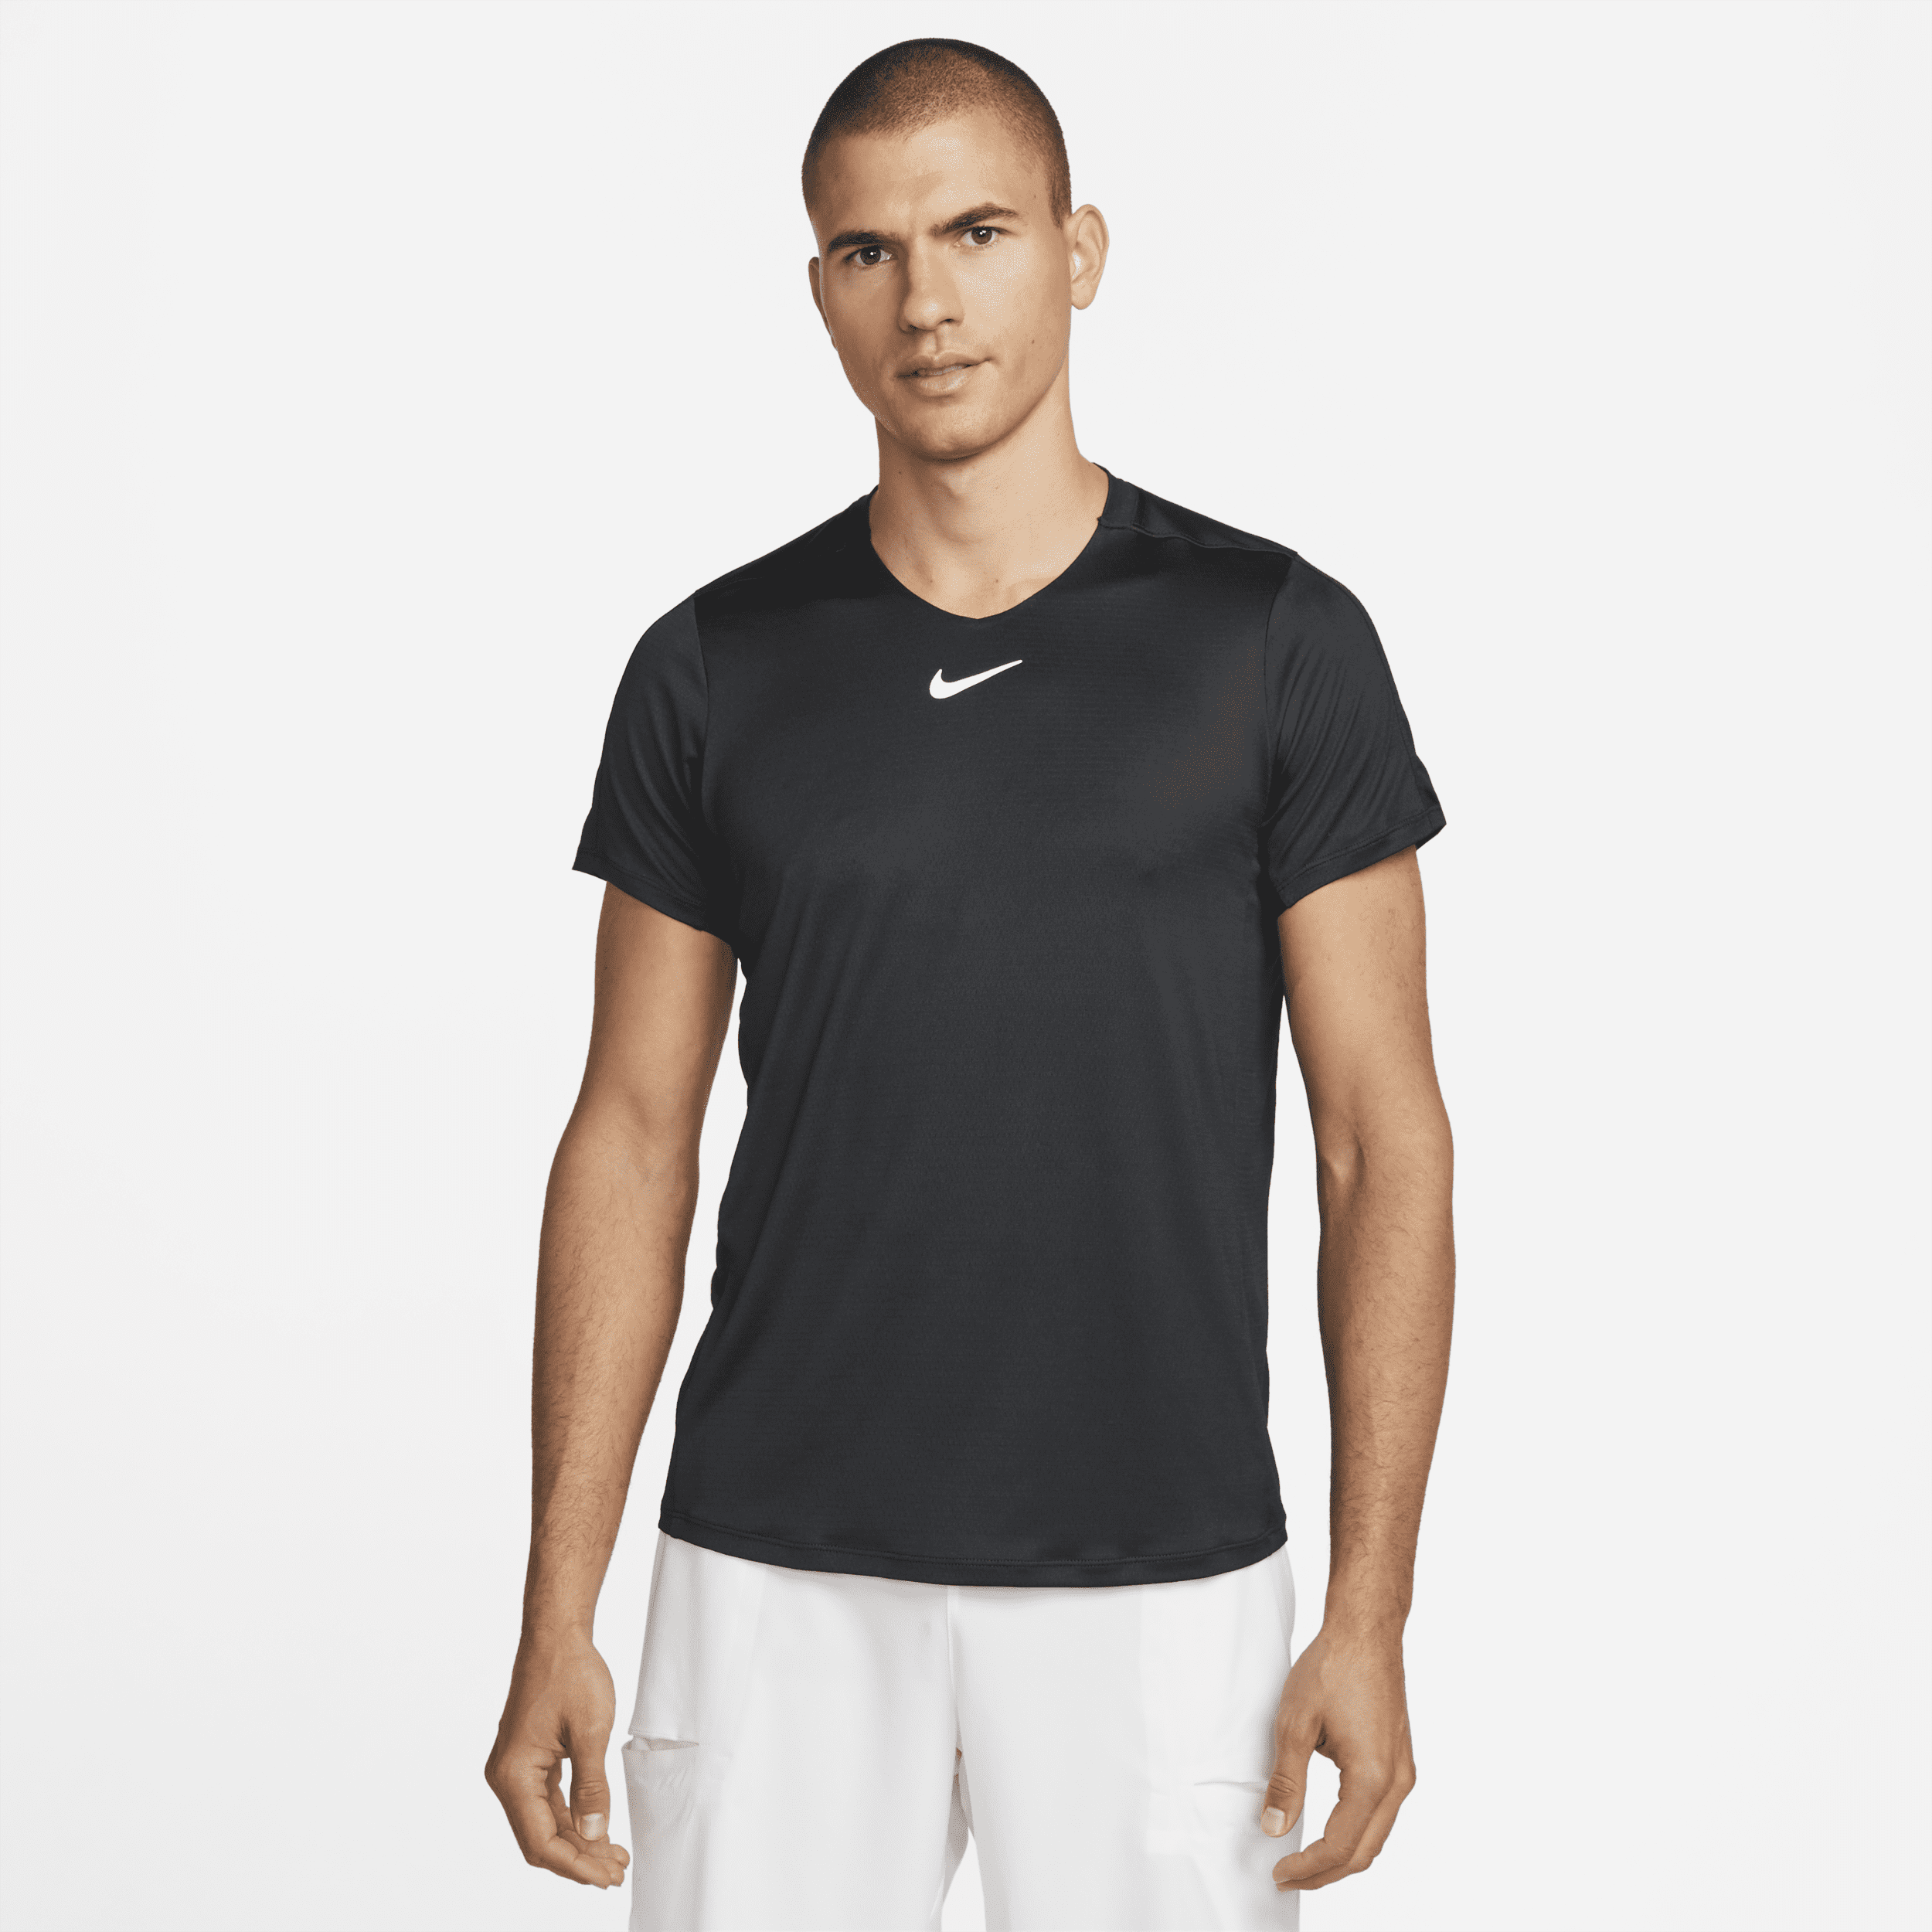 NikeCourt Dri-FIT Advantage-tennistrøje til mænd - sort